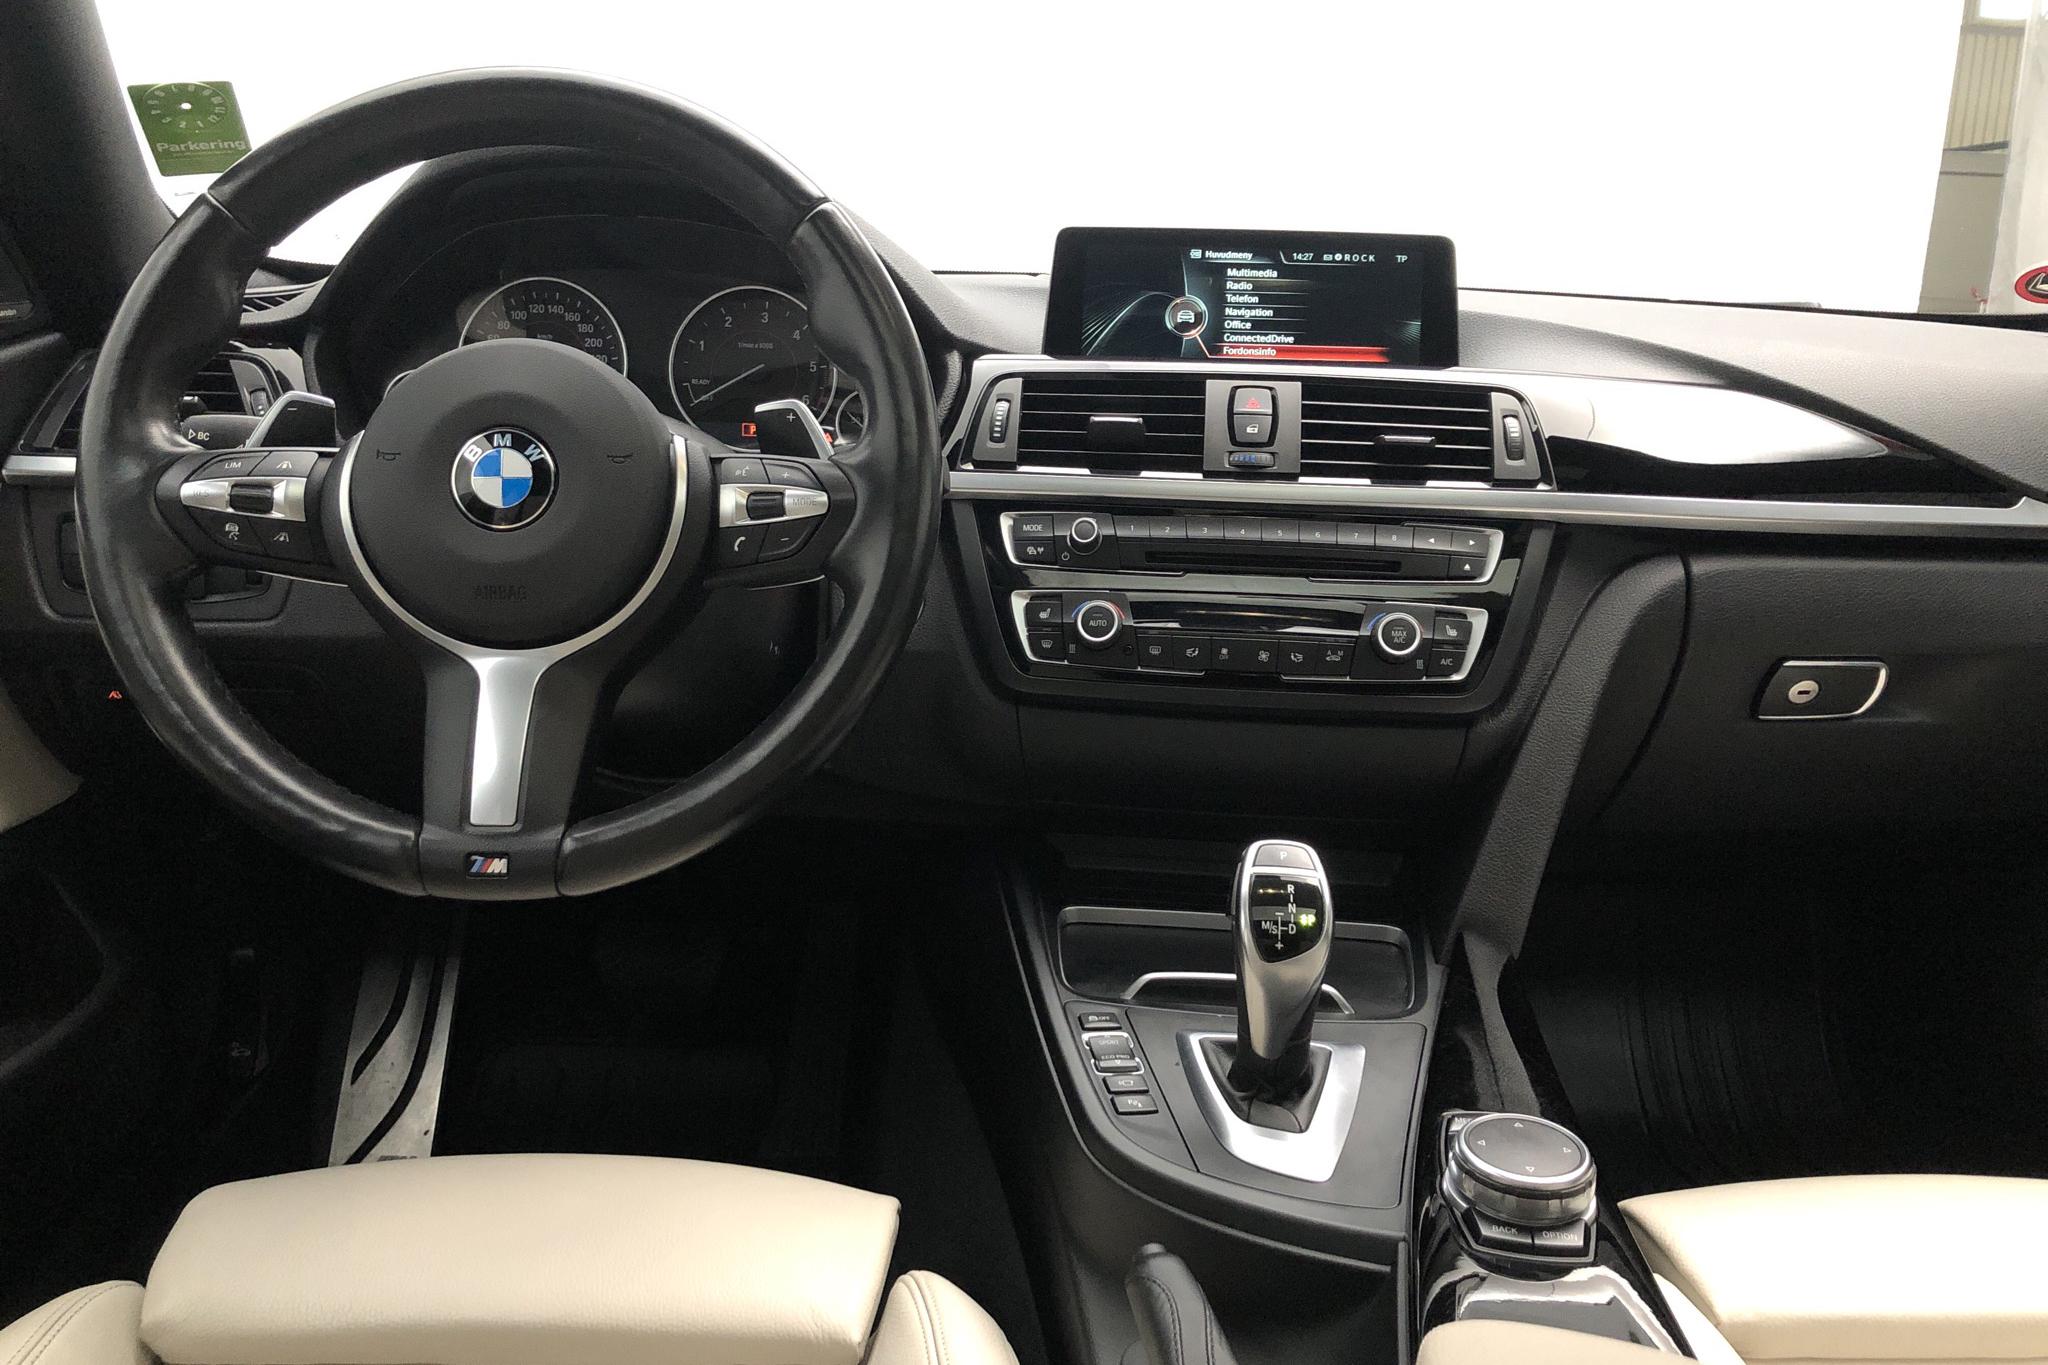 BMW 435d xDrive Gran Coupé, F36 (313hk) - 91 160 km - Automatic - black - 2016